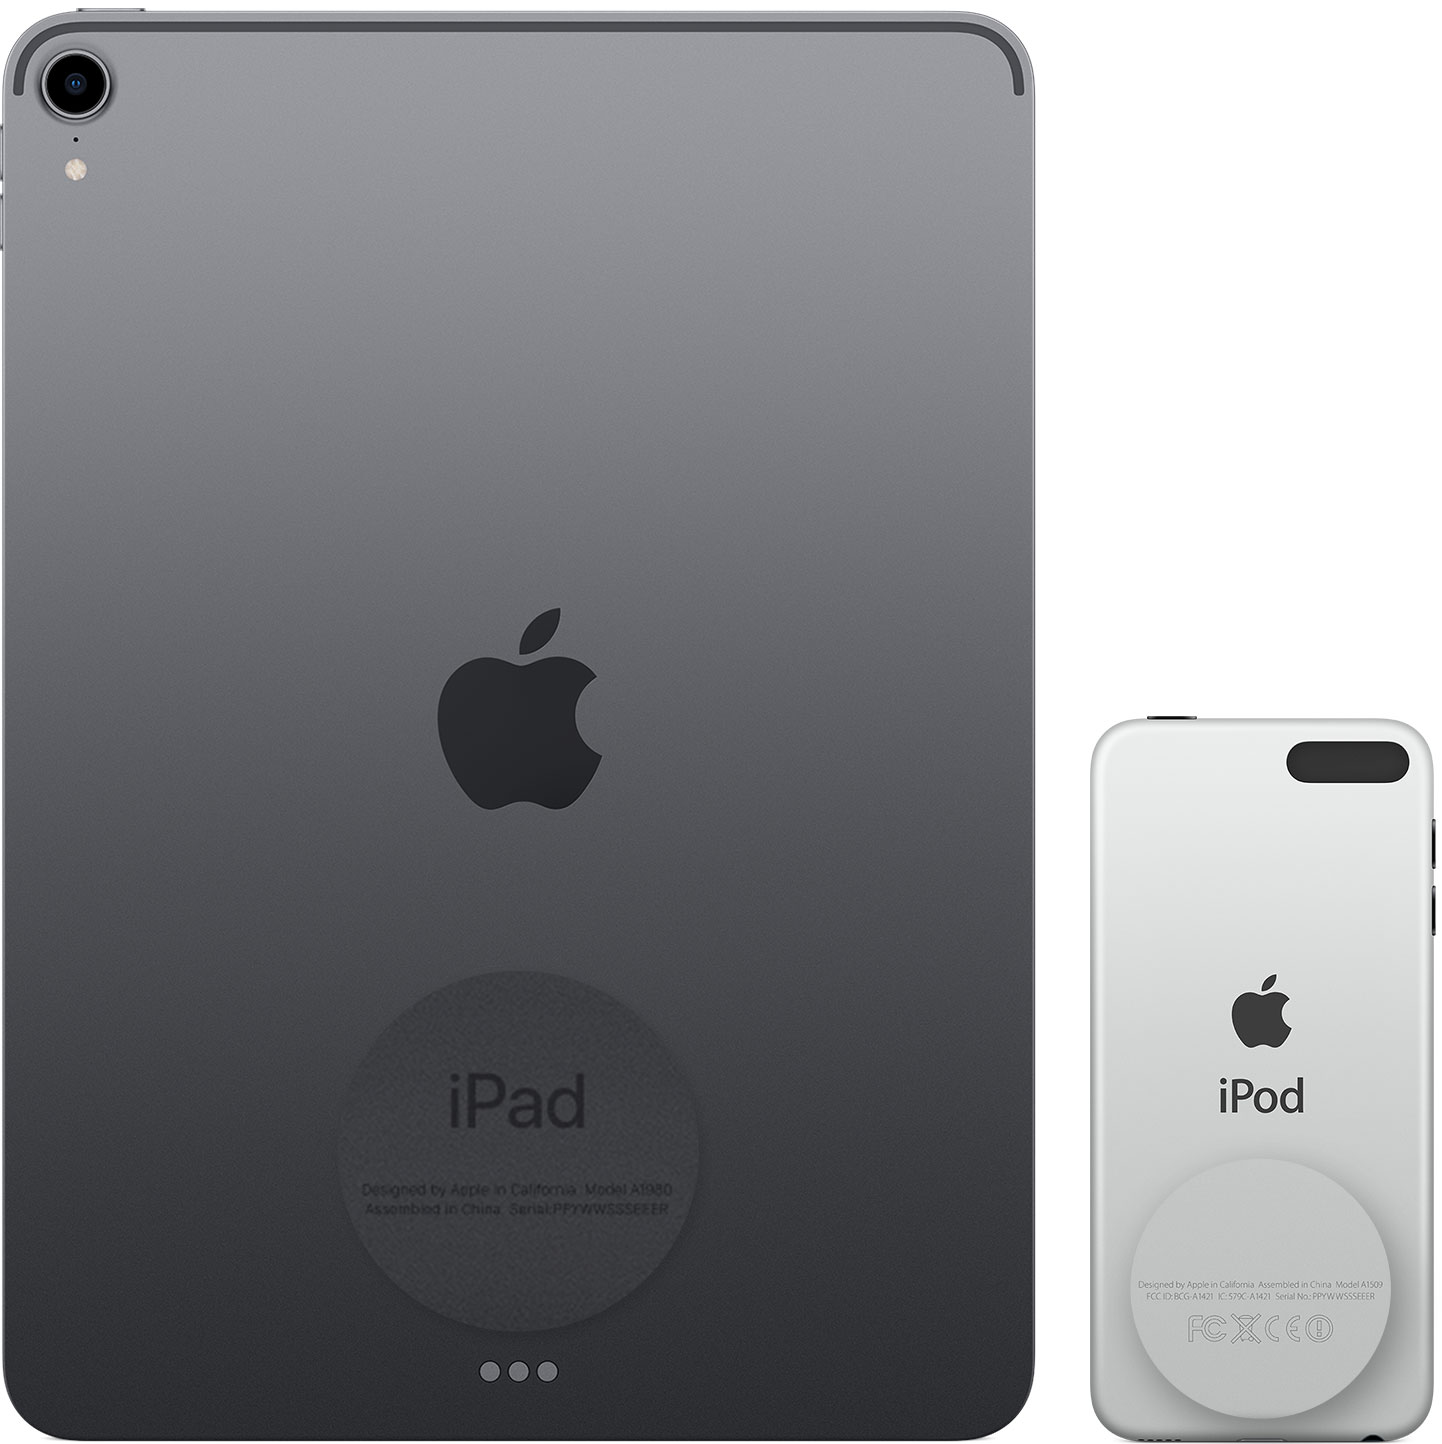 Mặt lưng của iPad và iPod touch